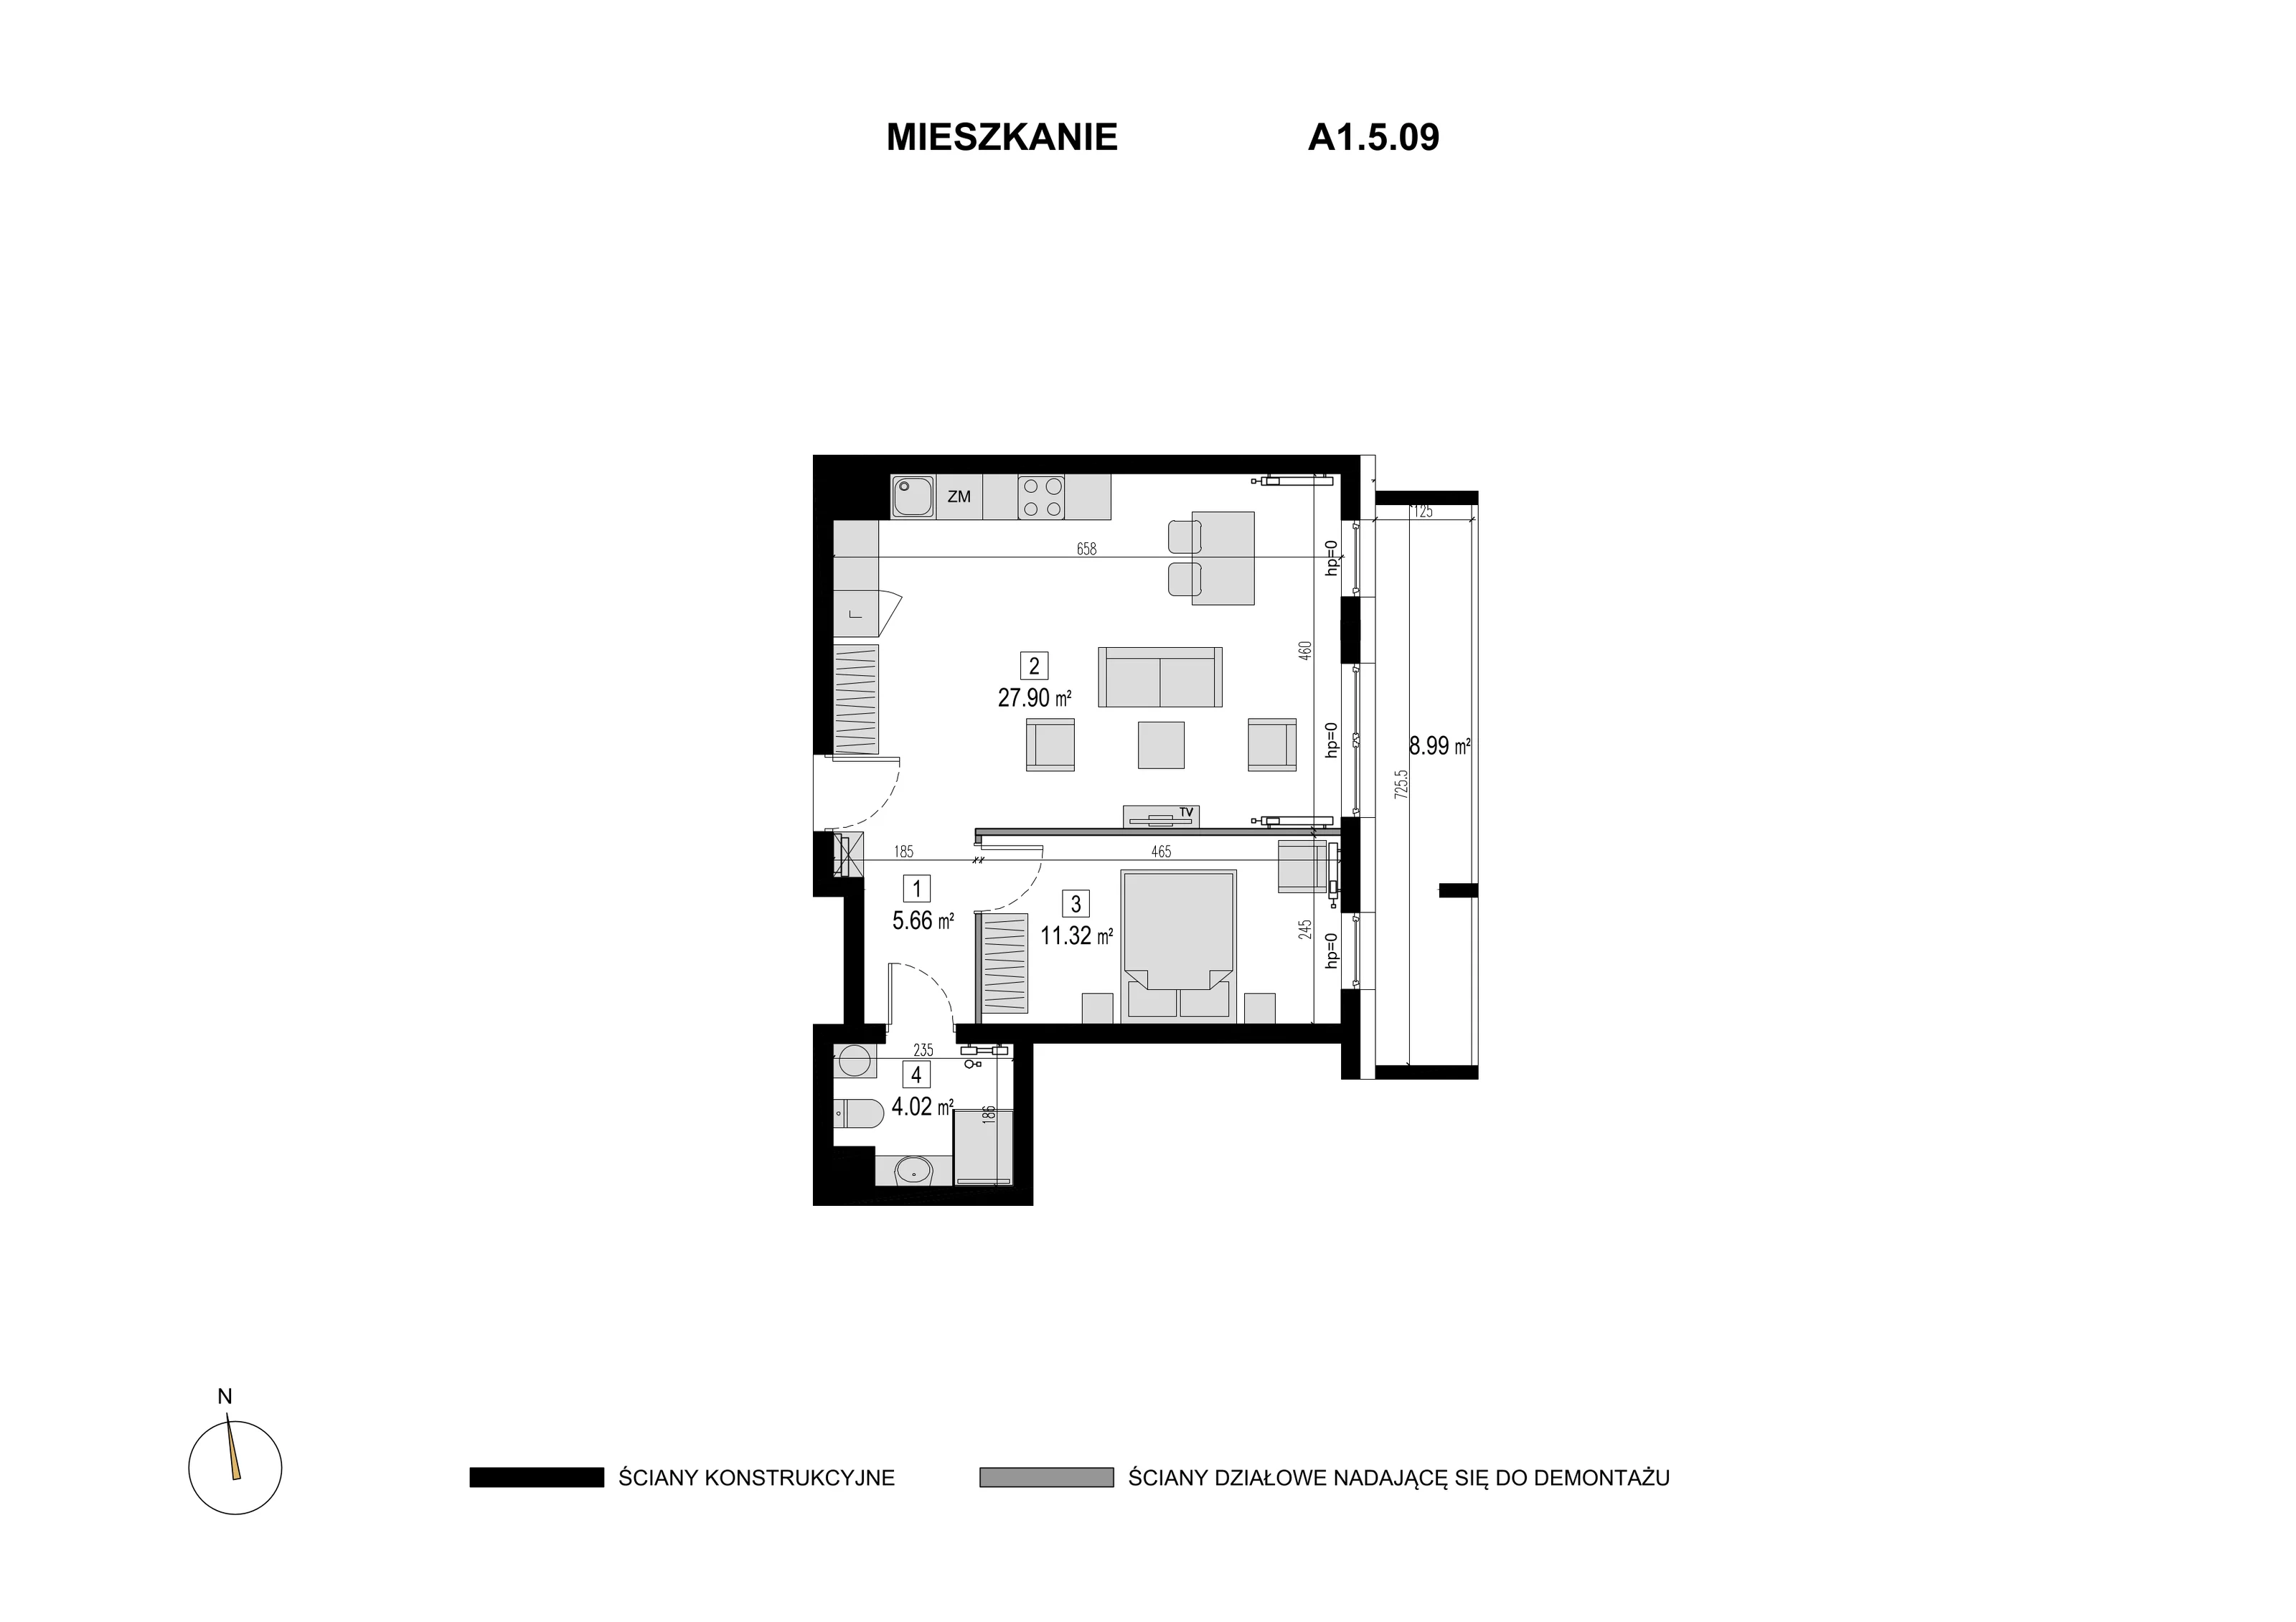 Mieszkanie 48,90 m², piętro 4, oferta nr A1.5.09, Novaforma, Legnica, ul. Chojnowska